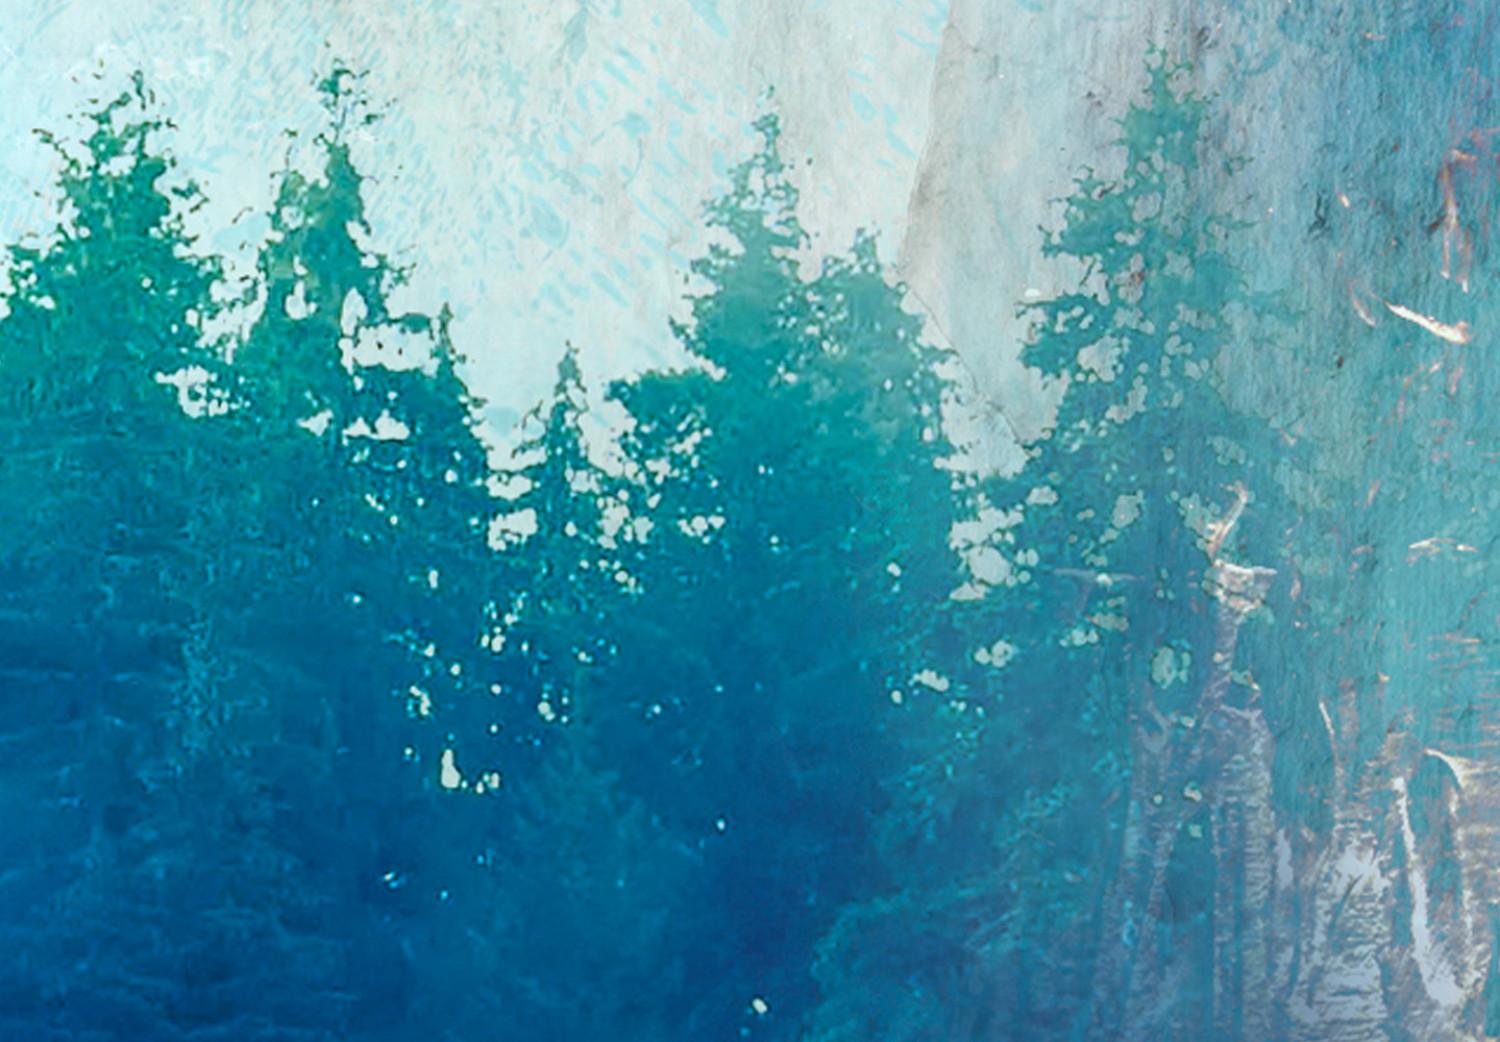 Poster Paraíso azul - composición abstracta de bosque en textura azul